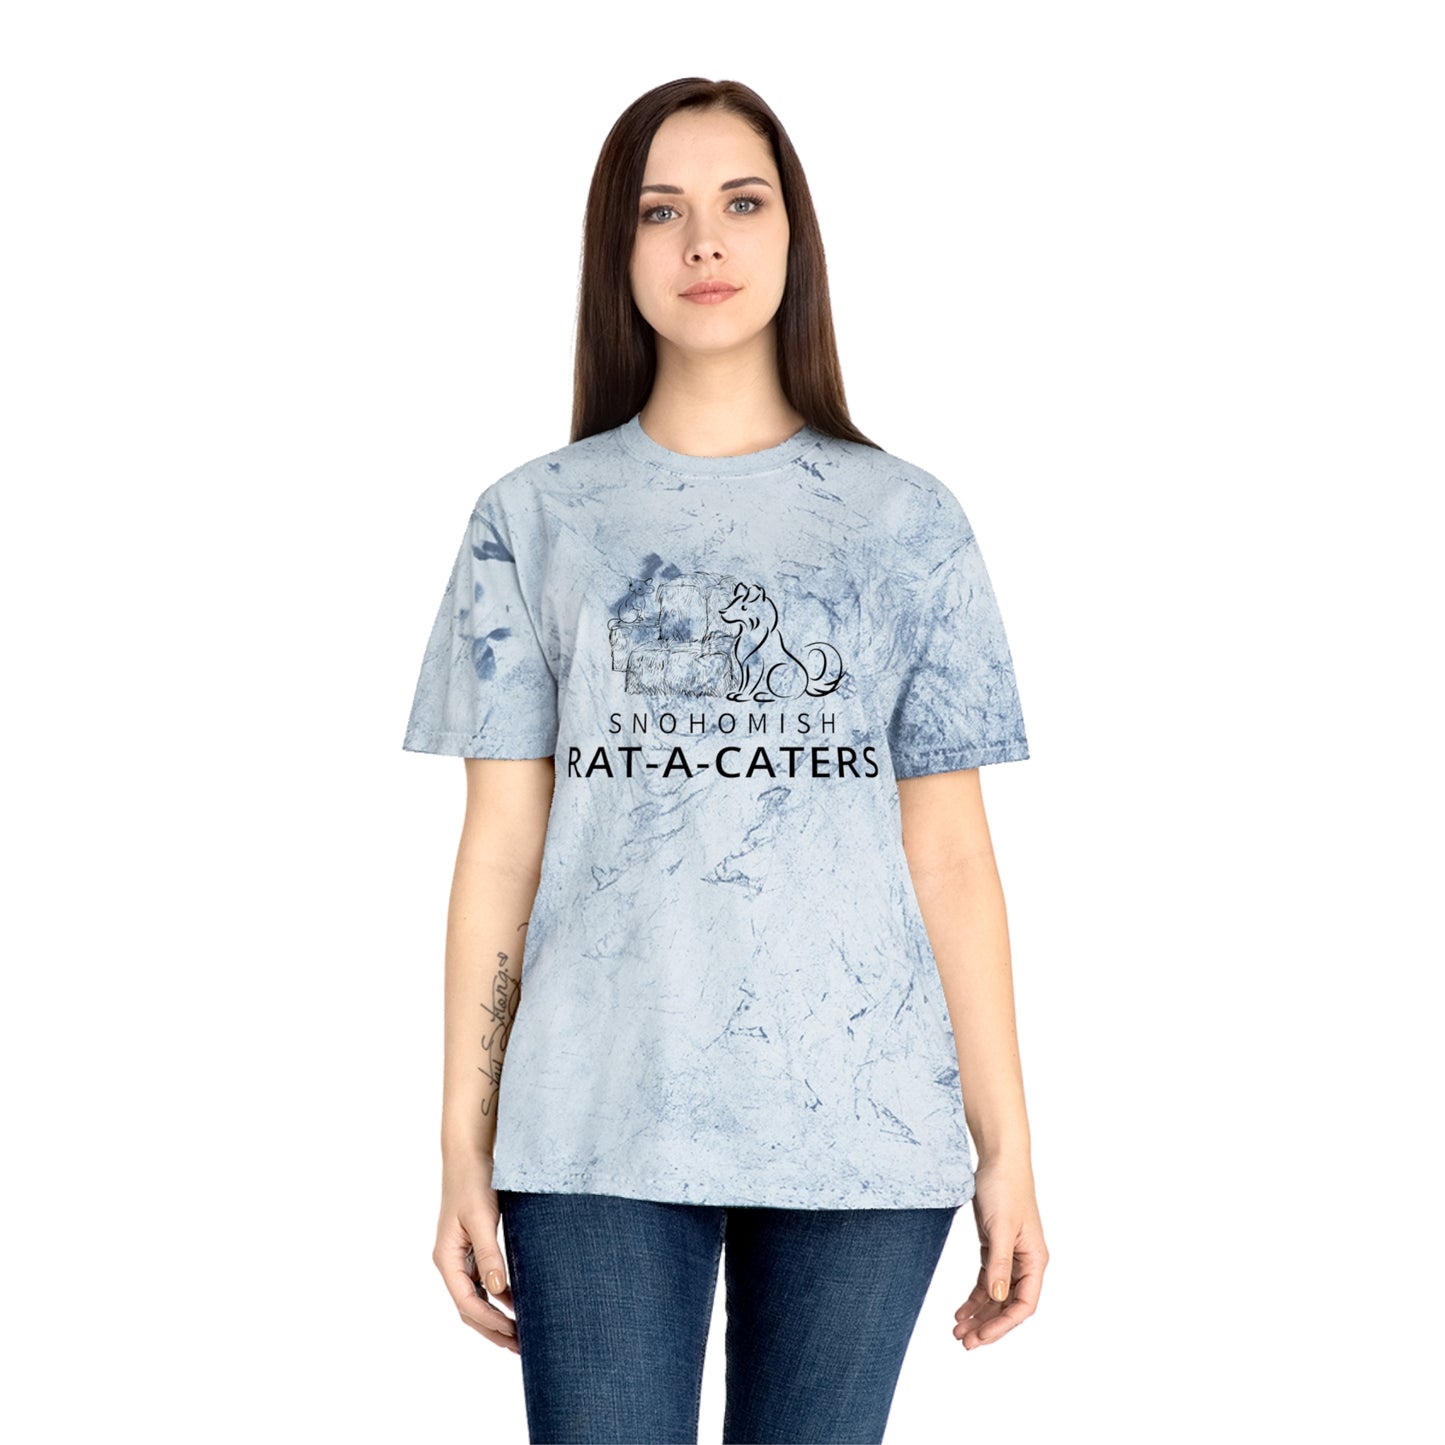 RAT-A-CATCHERS Unisex Color Blast T-Shirt